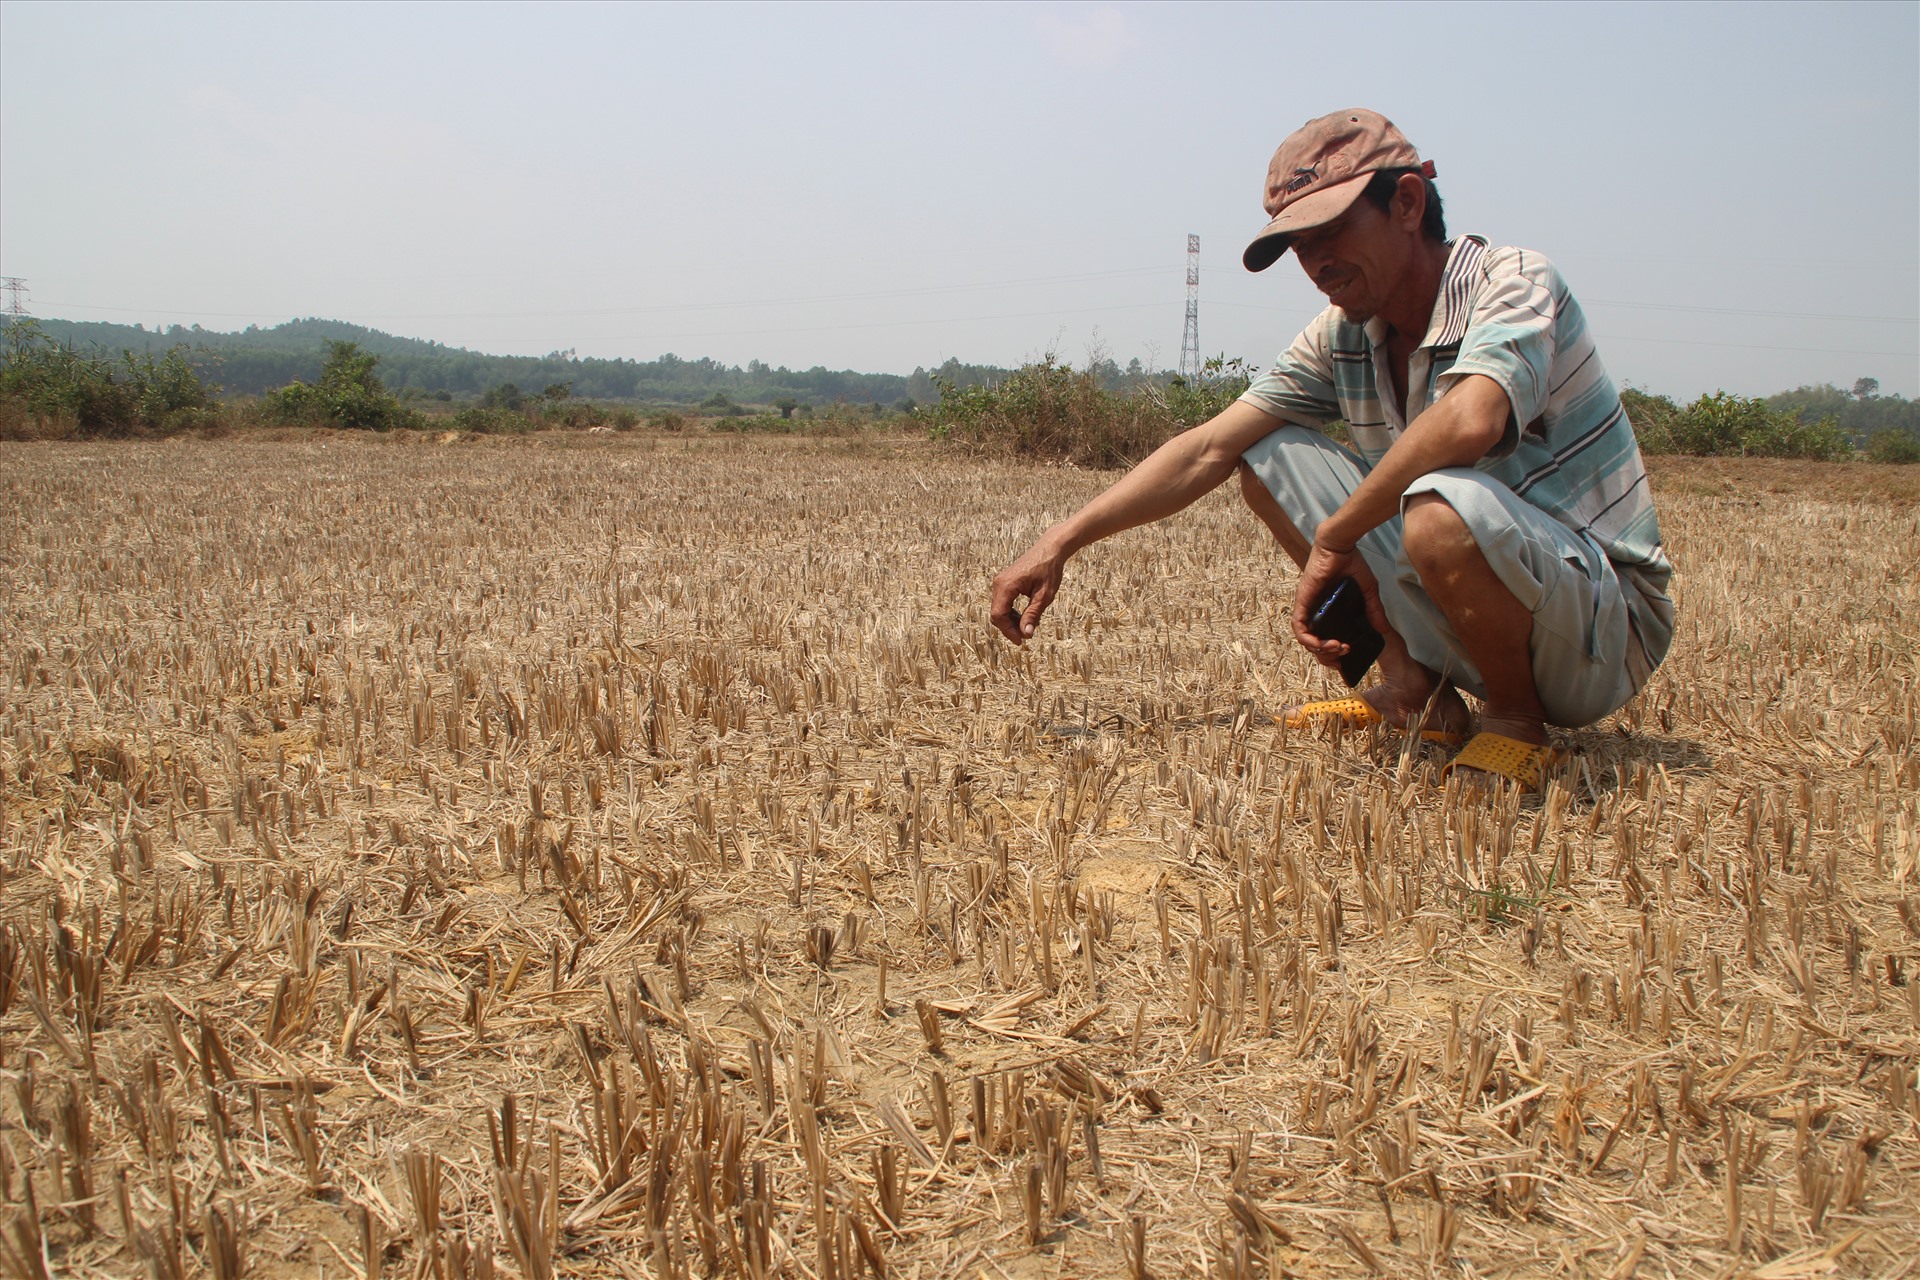 Ruộng lúa thiếu nước để sản xuất ở huyện Tây Sơn, tỉnh Bình Định. Ảnh: N.T